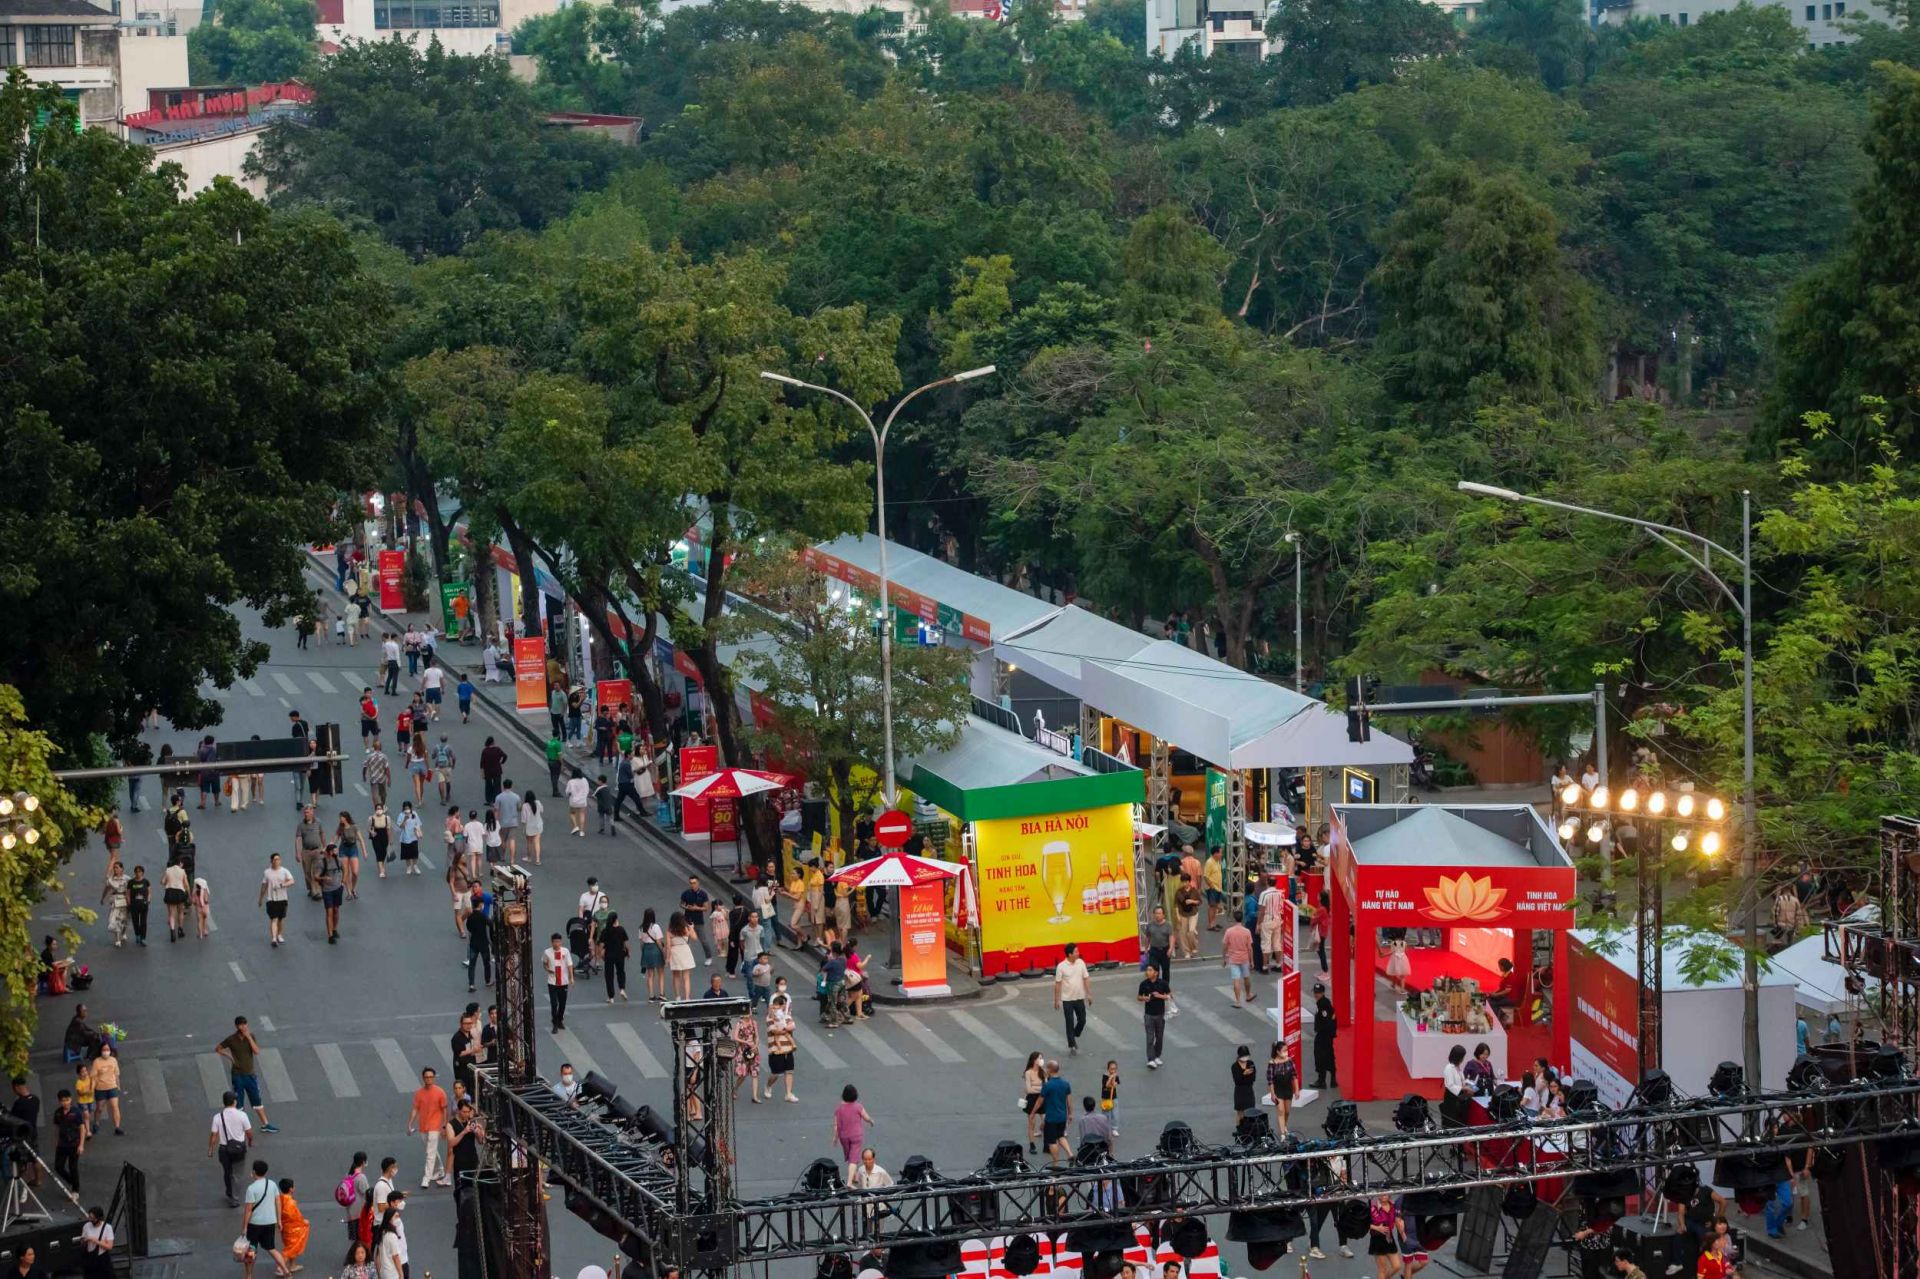 Lễ hội Tự hào hàng Việt Nam - Tinh hoa hàng Việt Nam tại khu vực Quảng trường Đông Kinh Nghĩa Thục, phố đi bộ hồ Hoàn Kiếm, Hà Nội